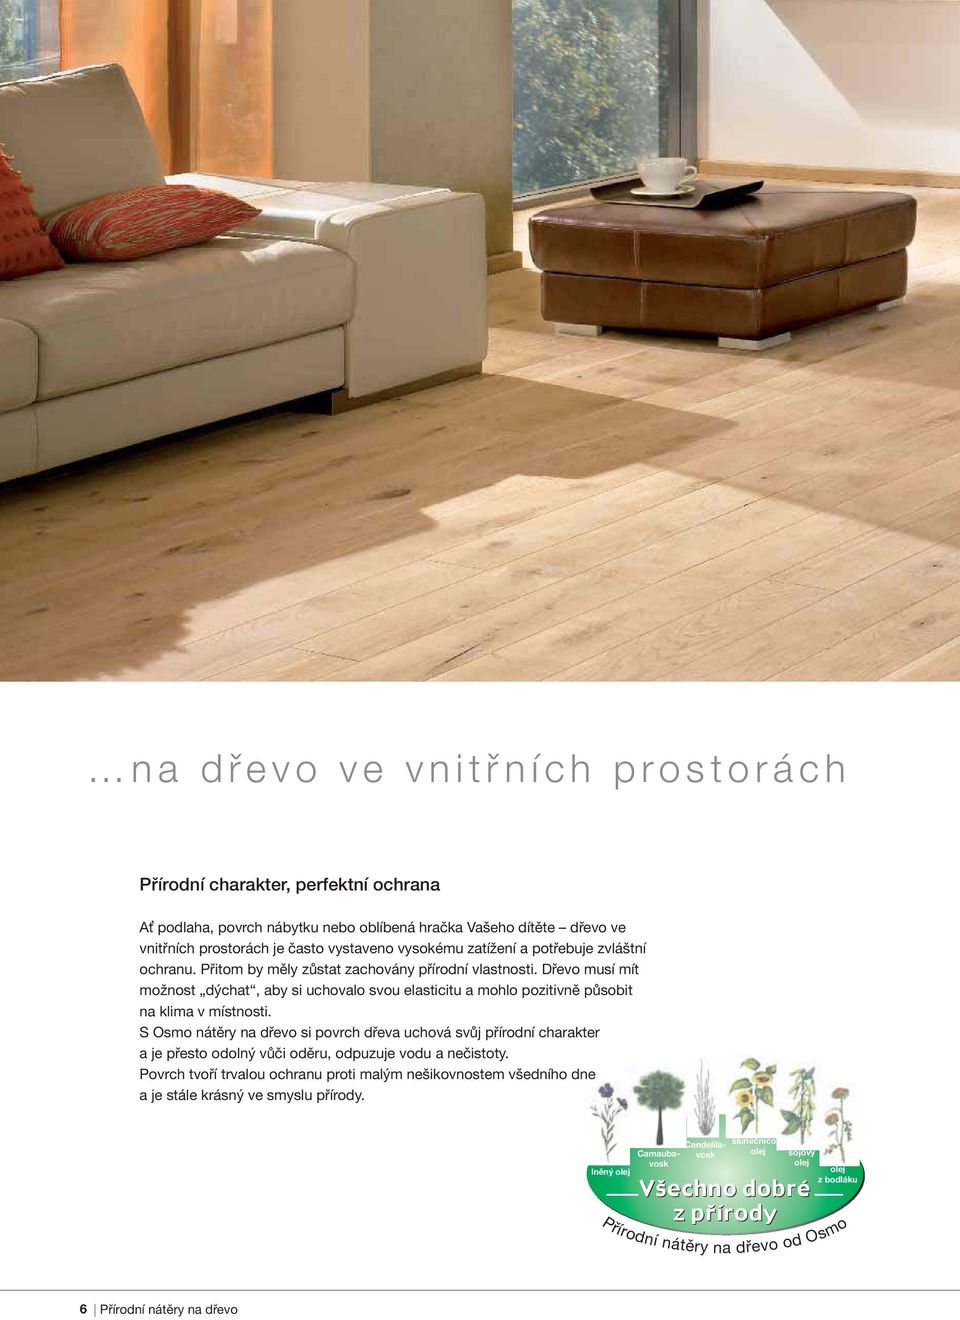 Dřevo musí mít možnost dýchat, aby si uchovalo svou elasticitu a mohlo pozitivně působit na klima v místnosti.